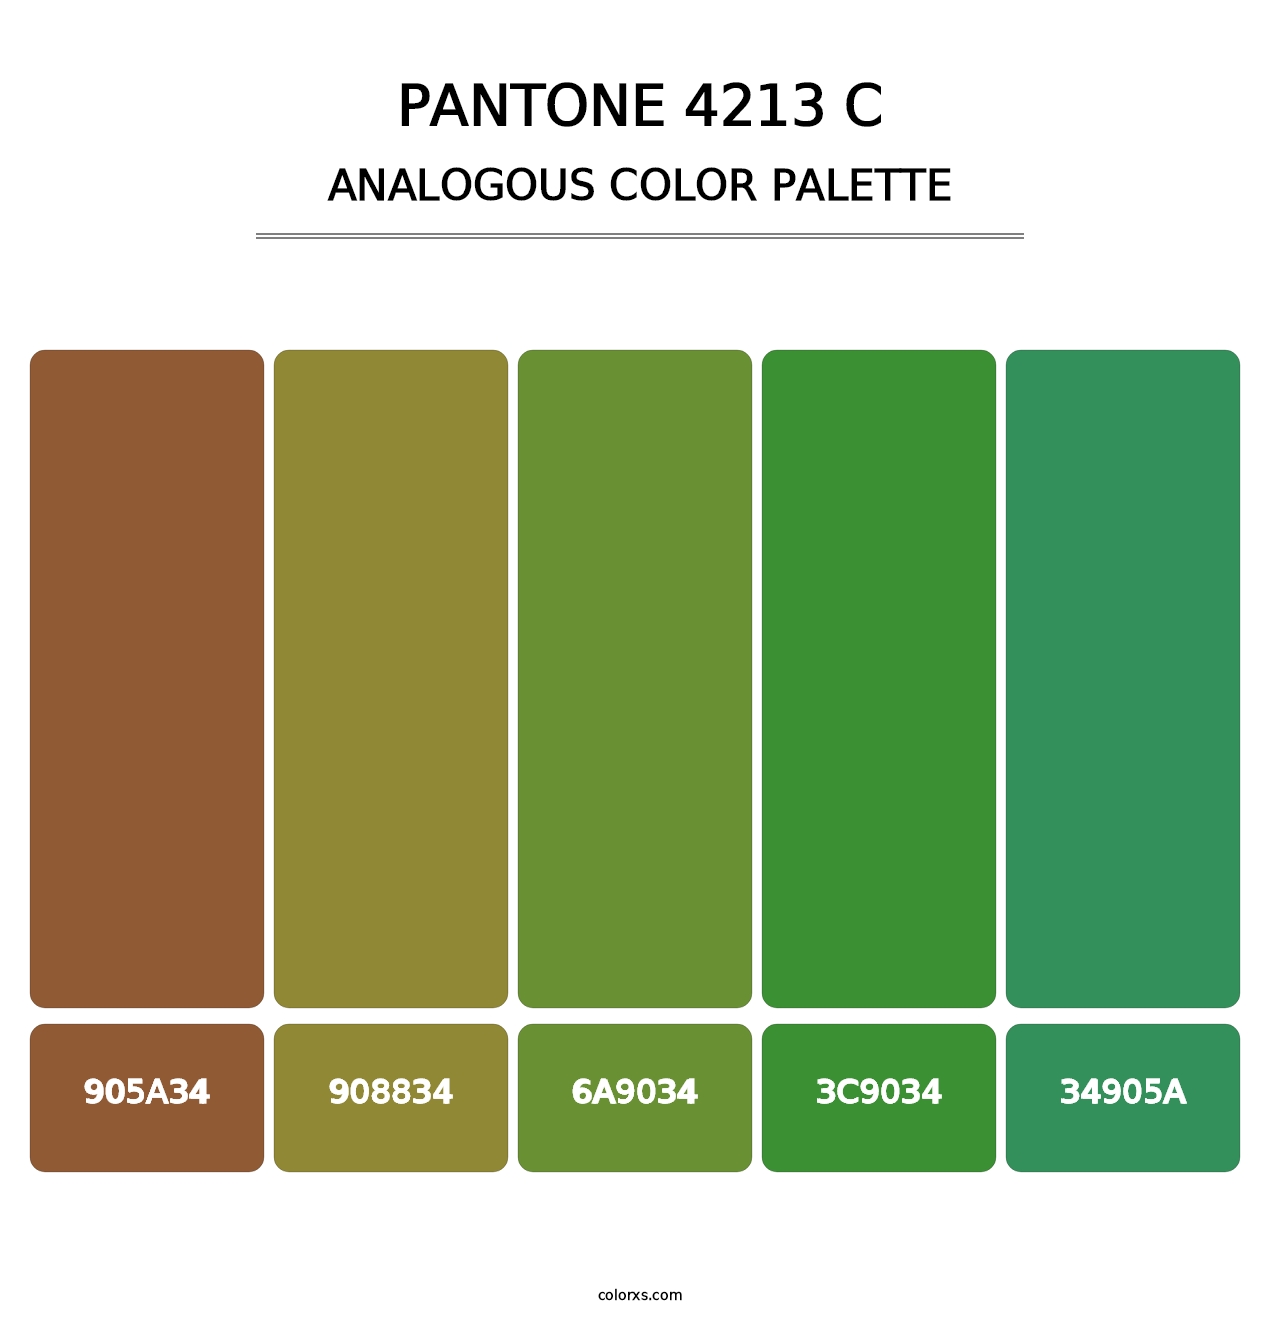 PANTONE 4213 C - Analogous Color Palette